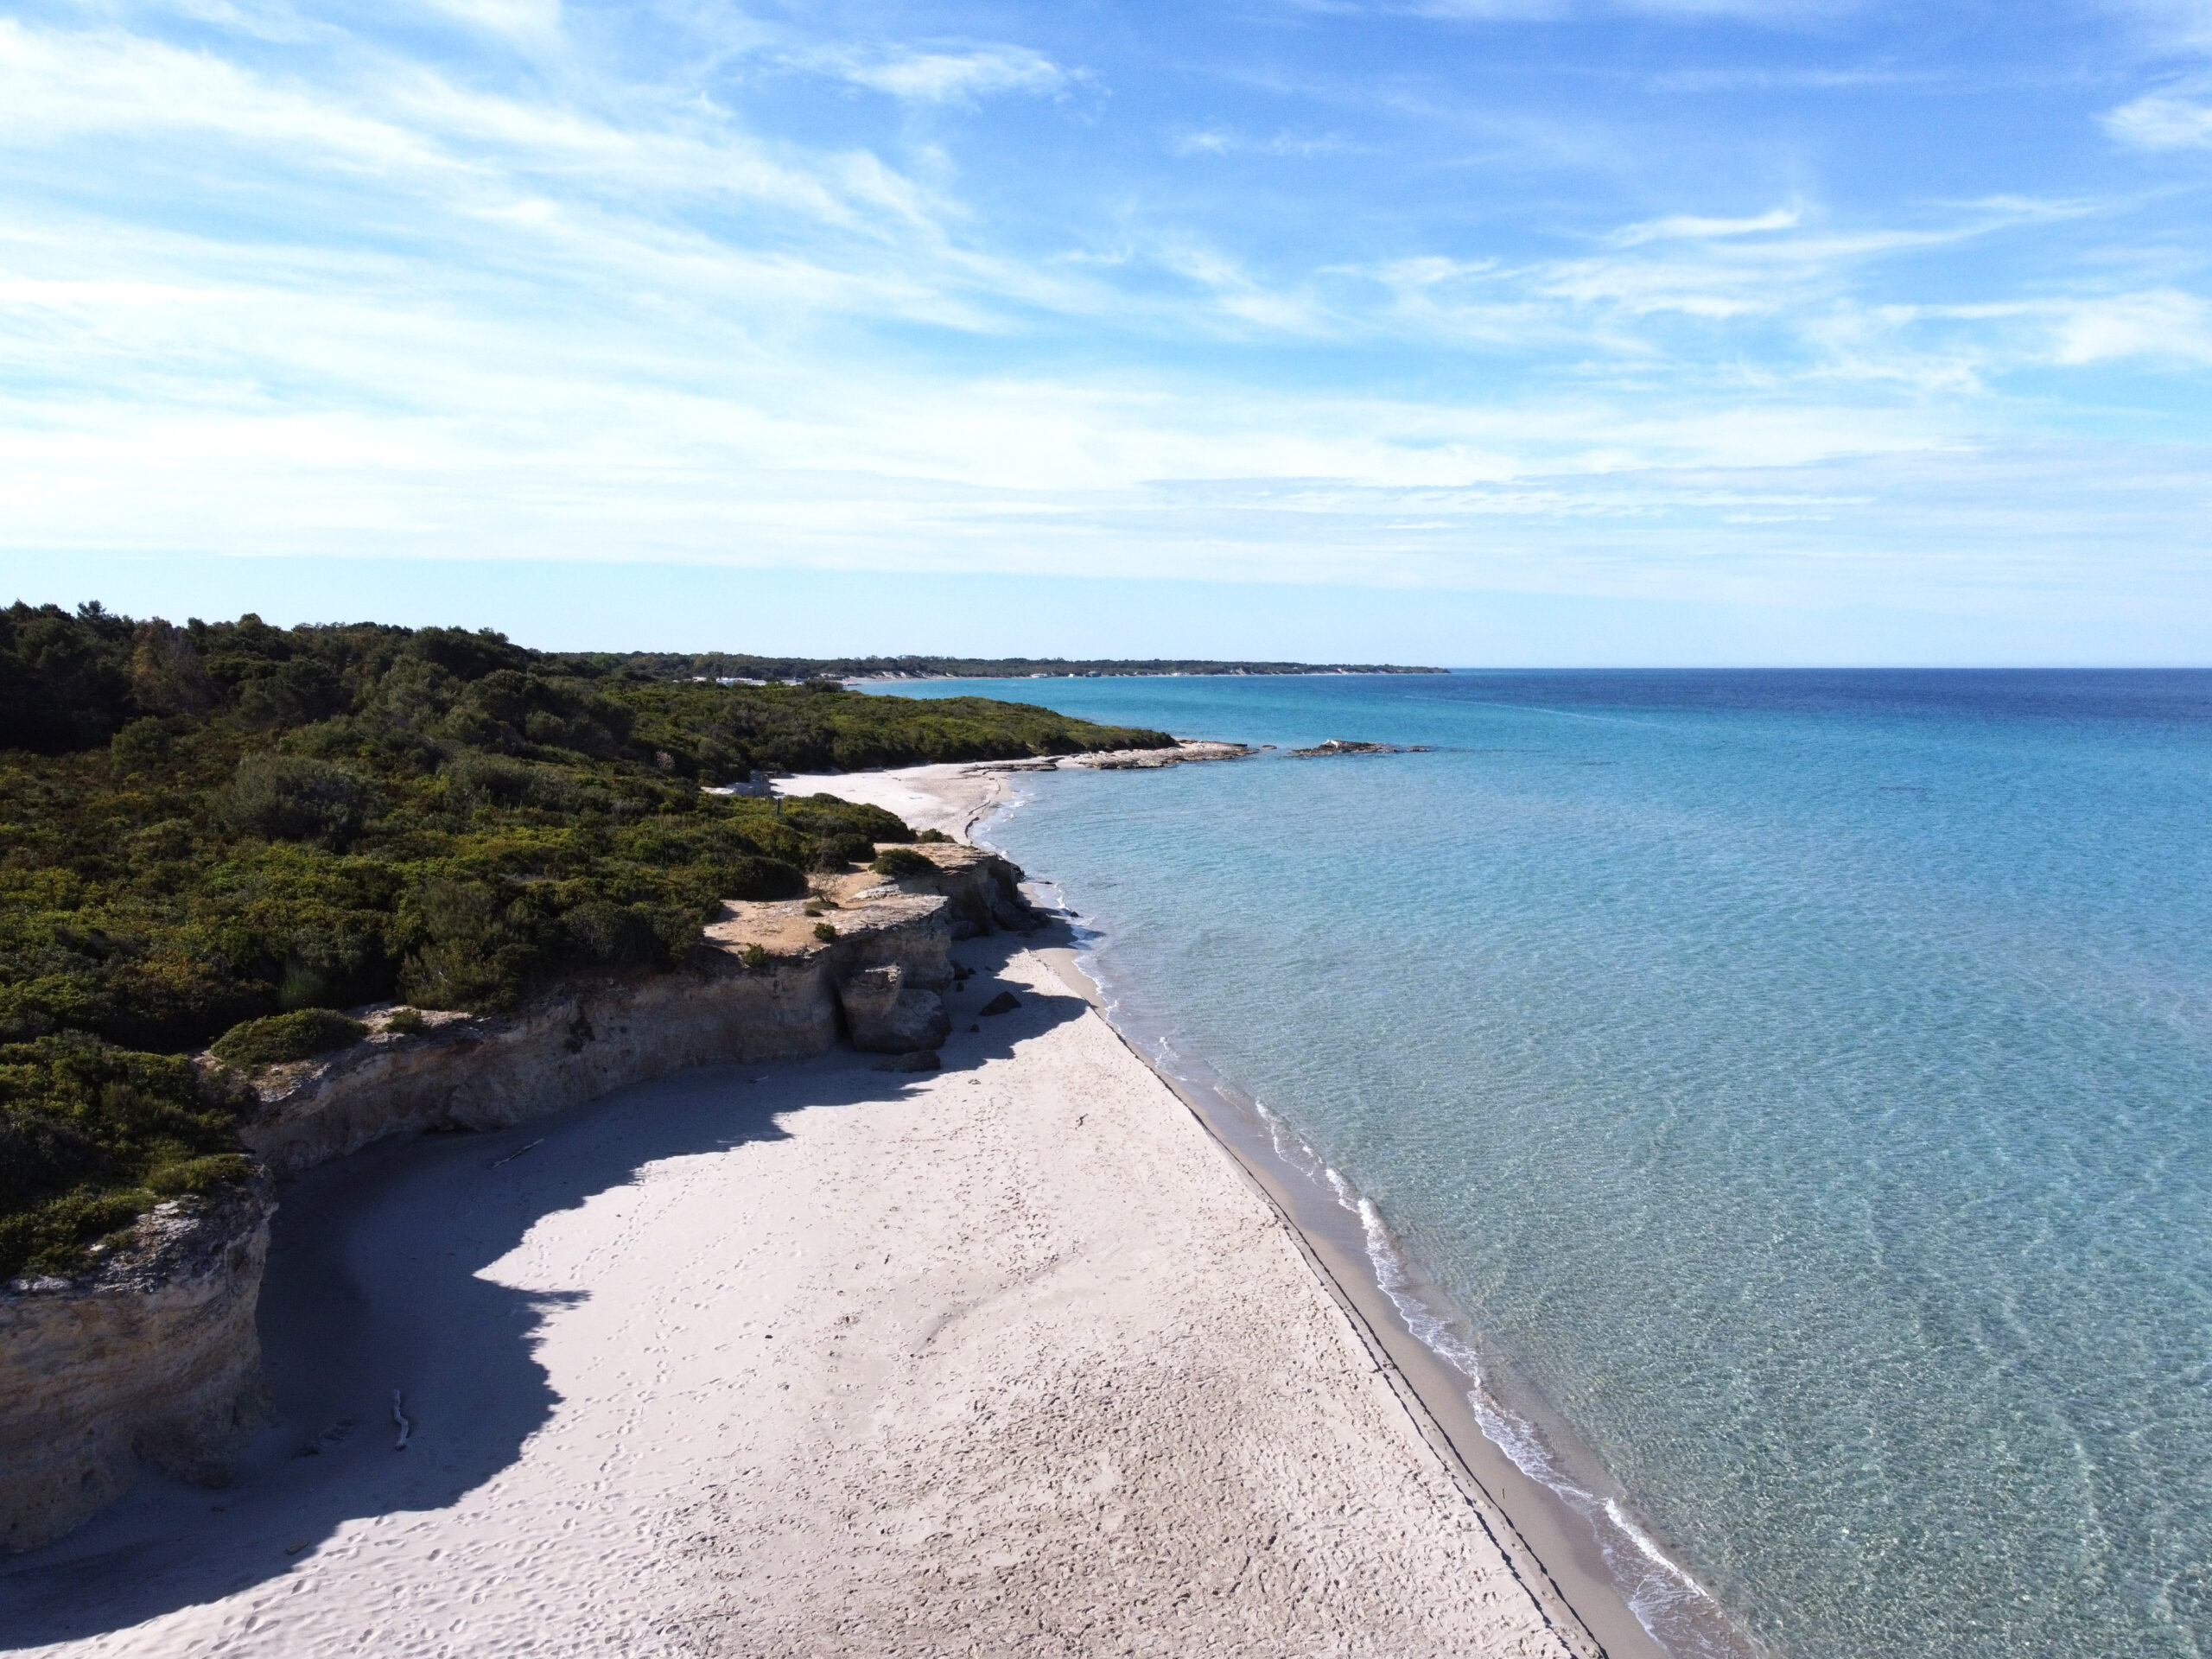 una foto scattata dall'alto della Baia dei turchi, in Salento costa Adriatica, e che inquadra un tratto di pineta ed il mare, calmo e cristallino